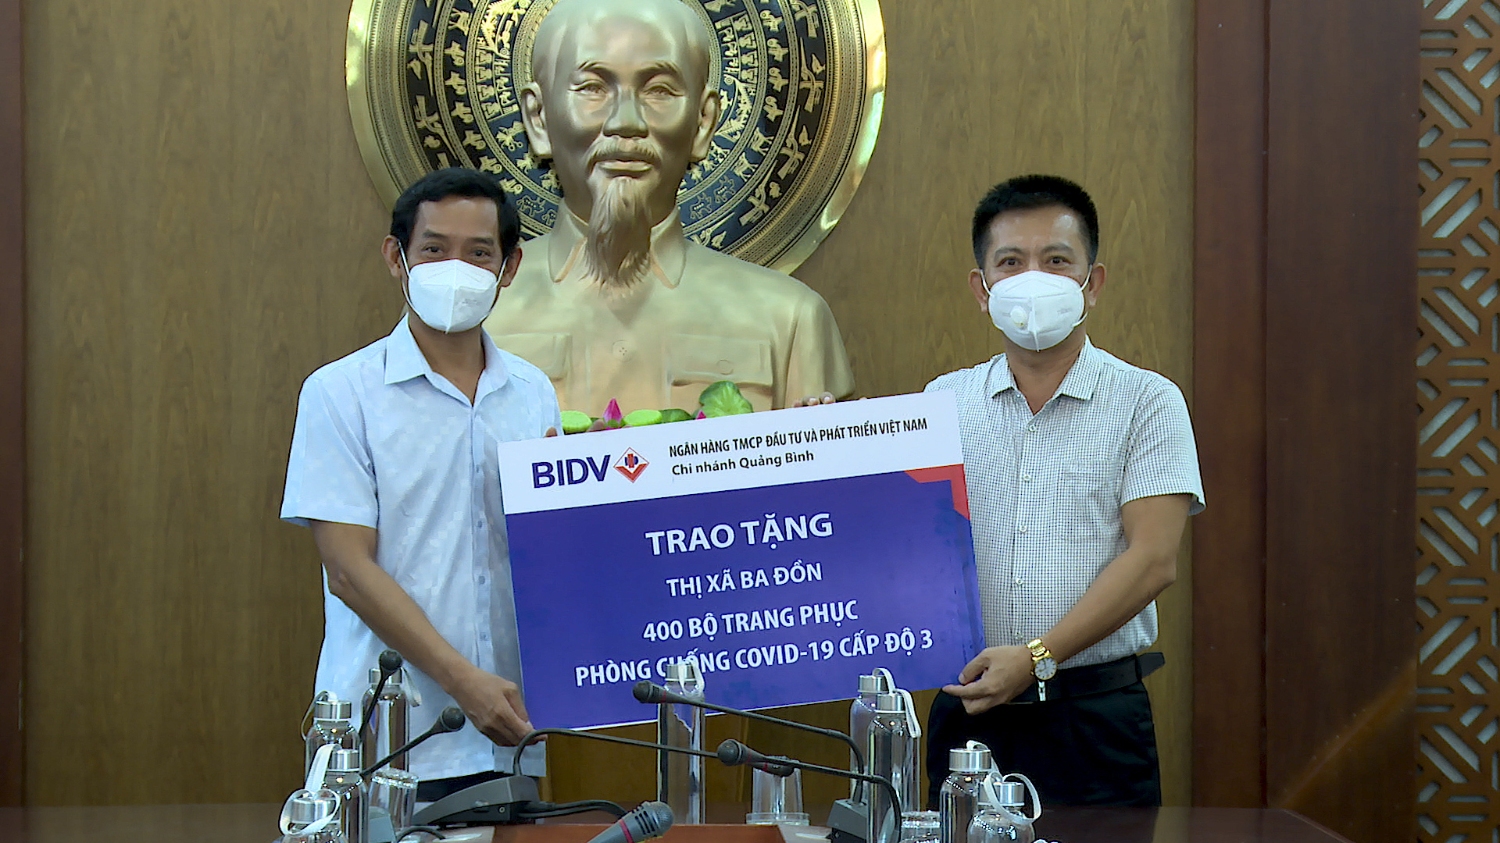 Ngân hàng TMCP Đầu tư và phát triển Việt Nam chi nhánh Quảng Bình